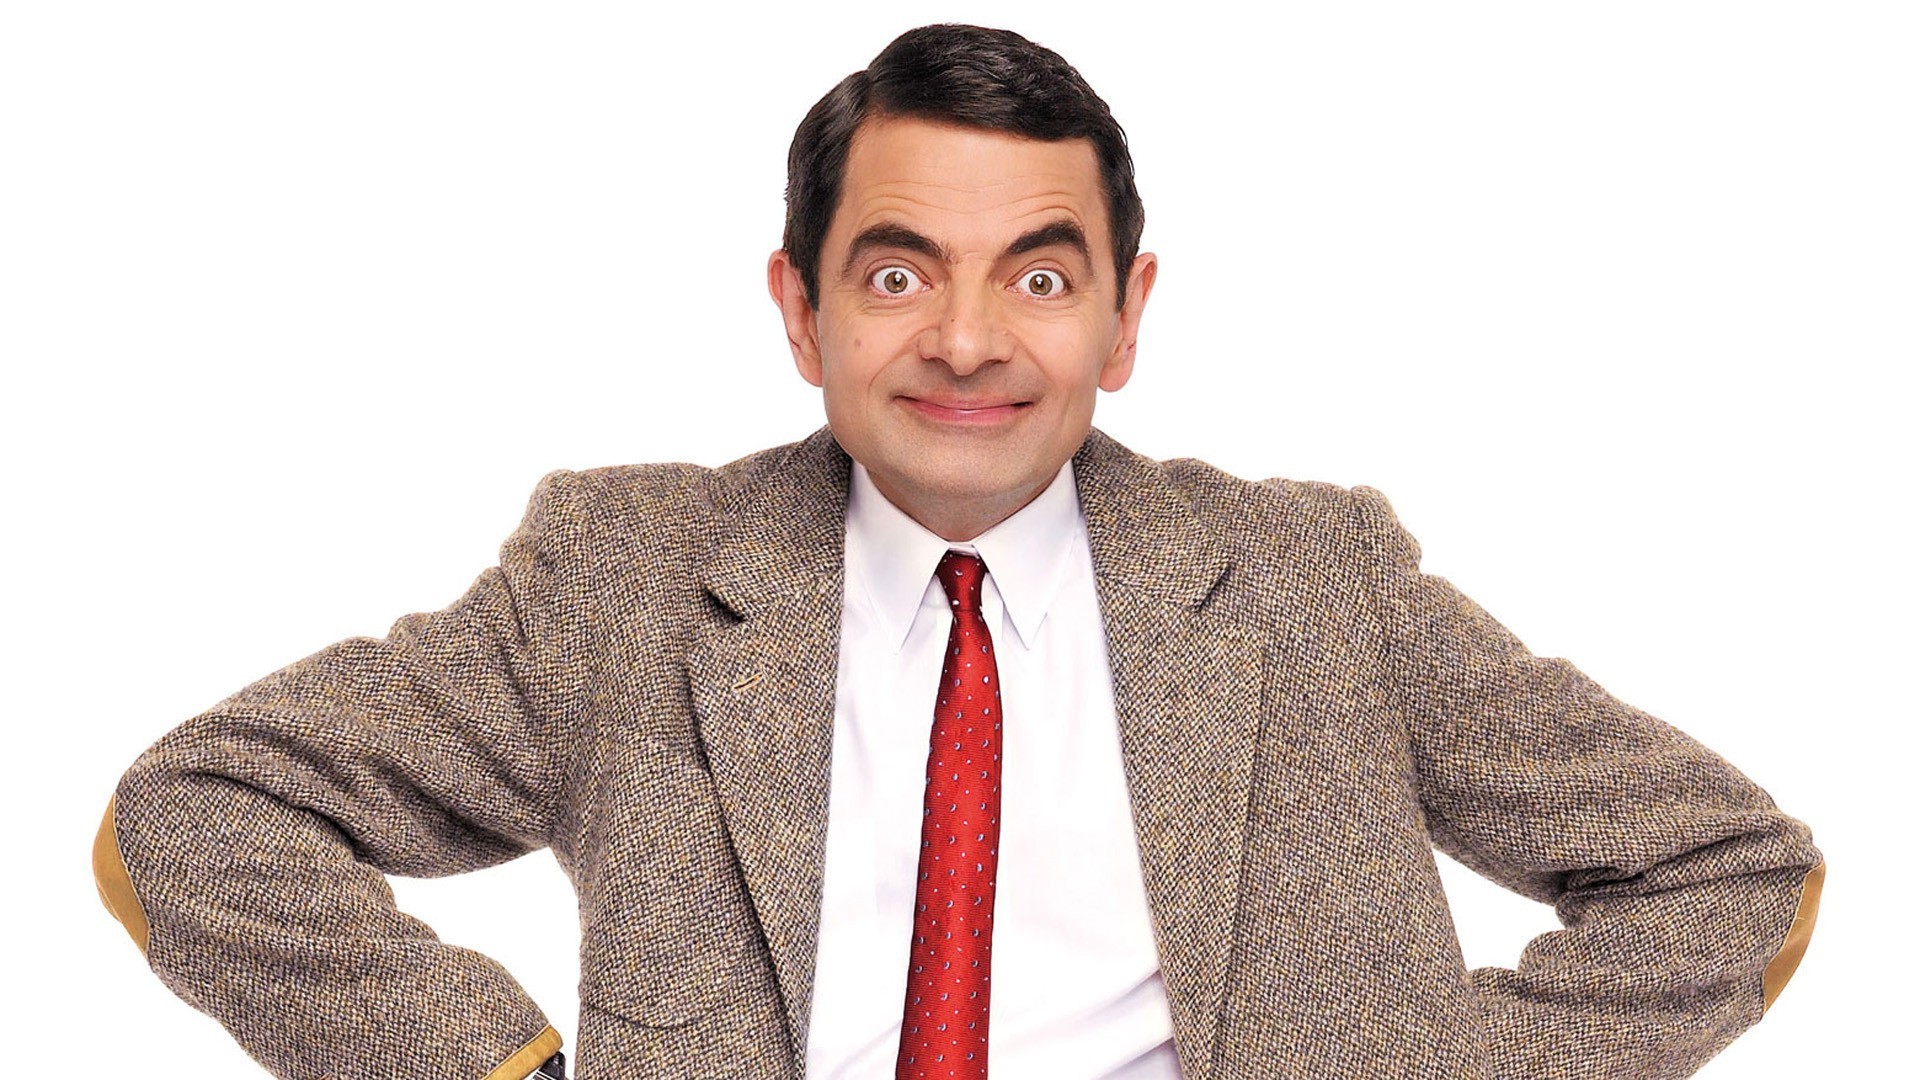 Mr Bean Background